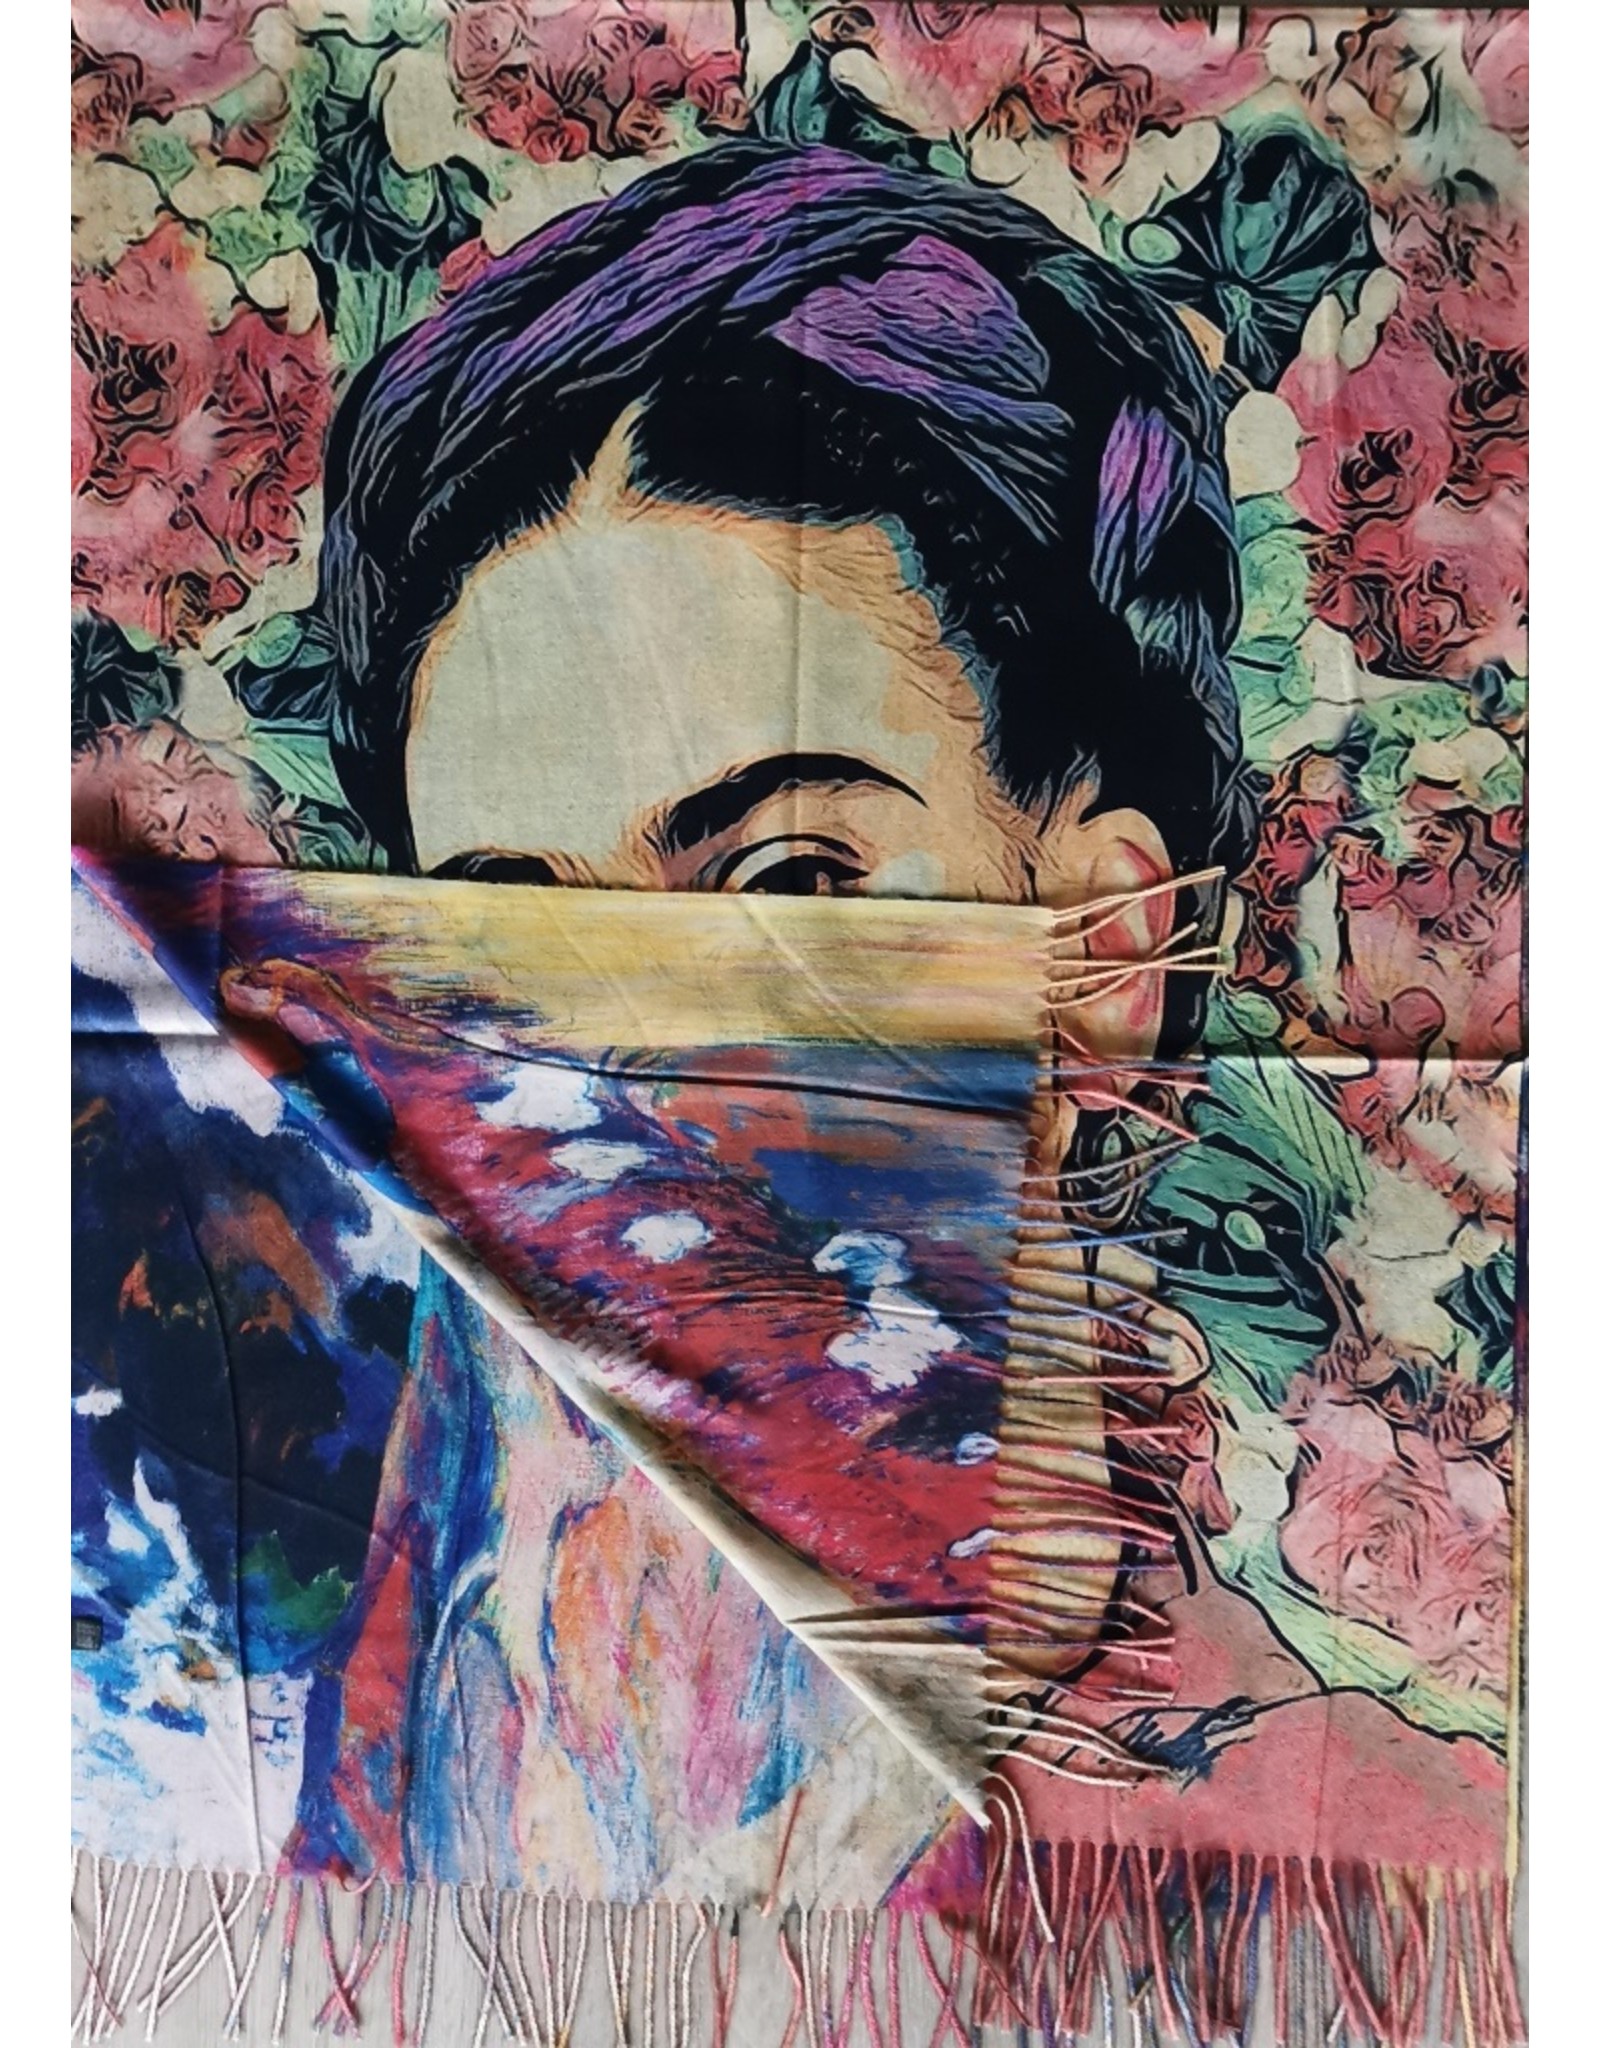 Miscellaneous - Frida Kahlo Shawl-Wraparound  Pastel Roses double sided